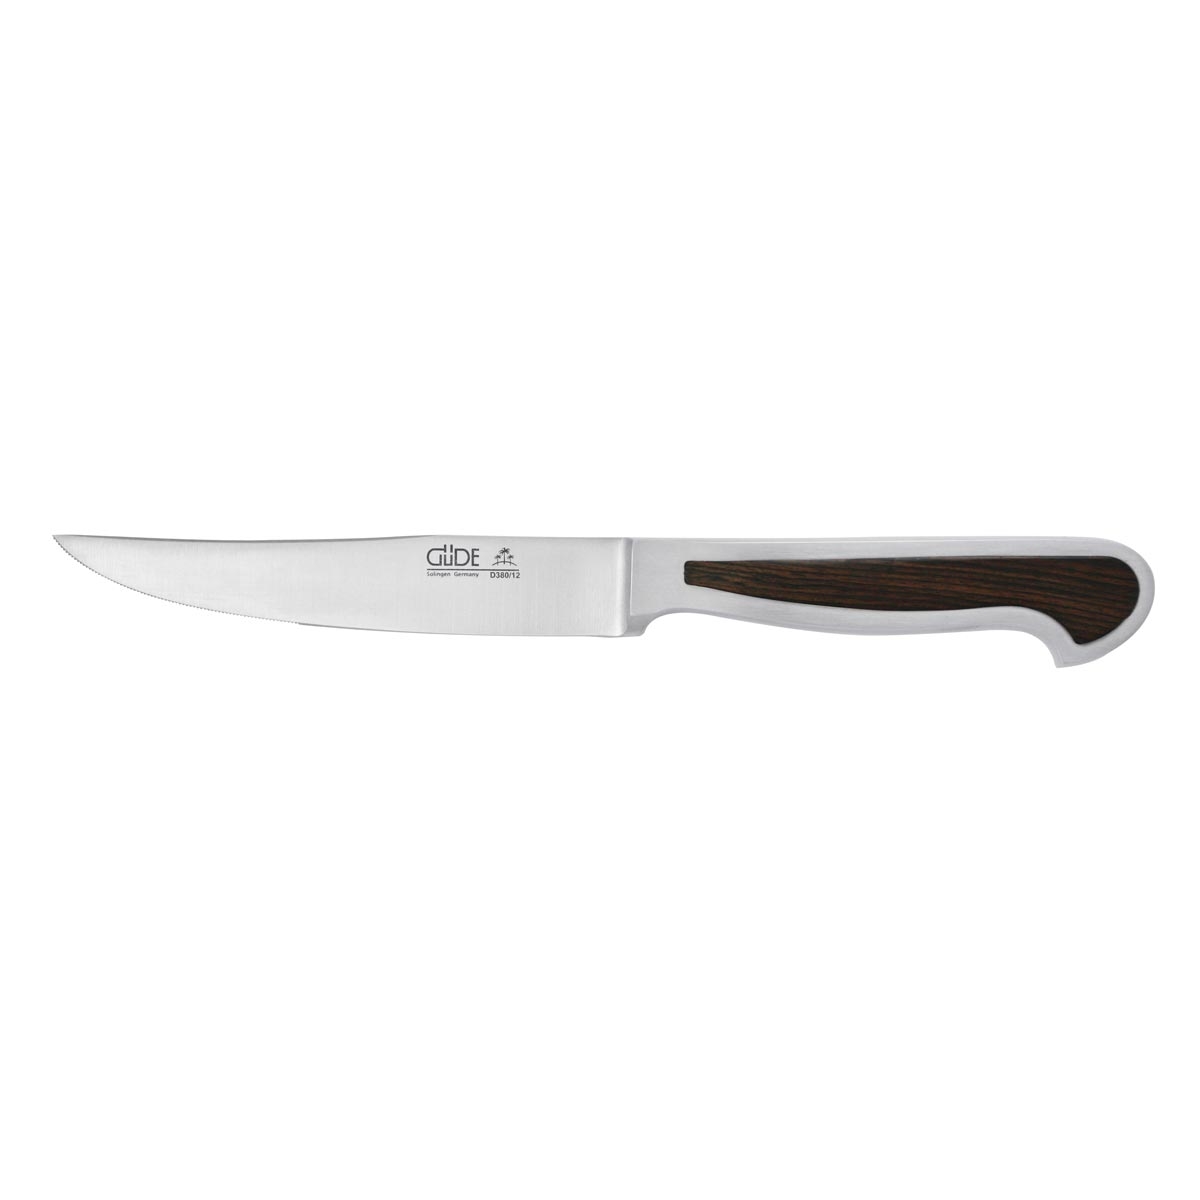 Güde Delta Steakmesser glatt 12 cm / CVM-Messerstahl mit Griffschalen aus Grenadillholz